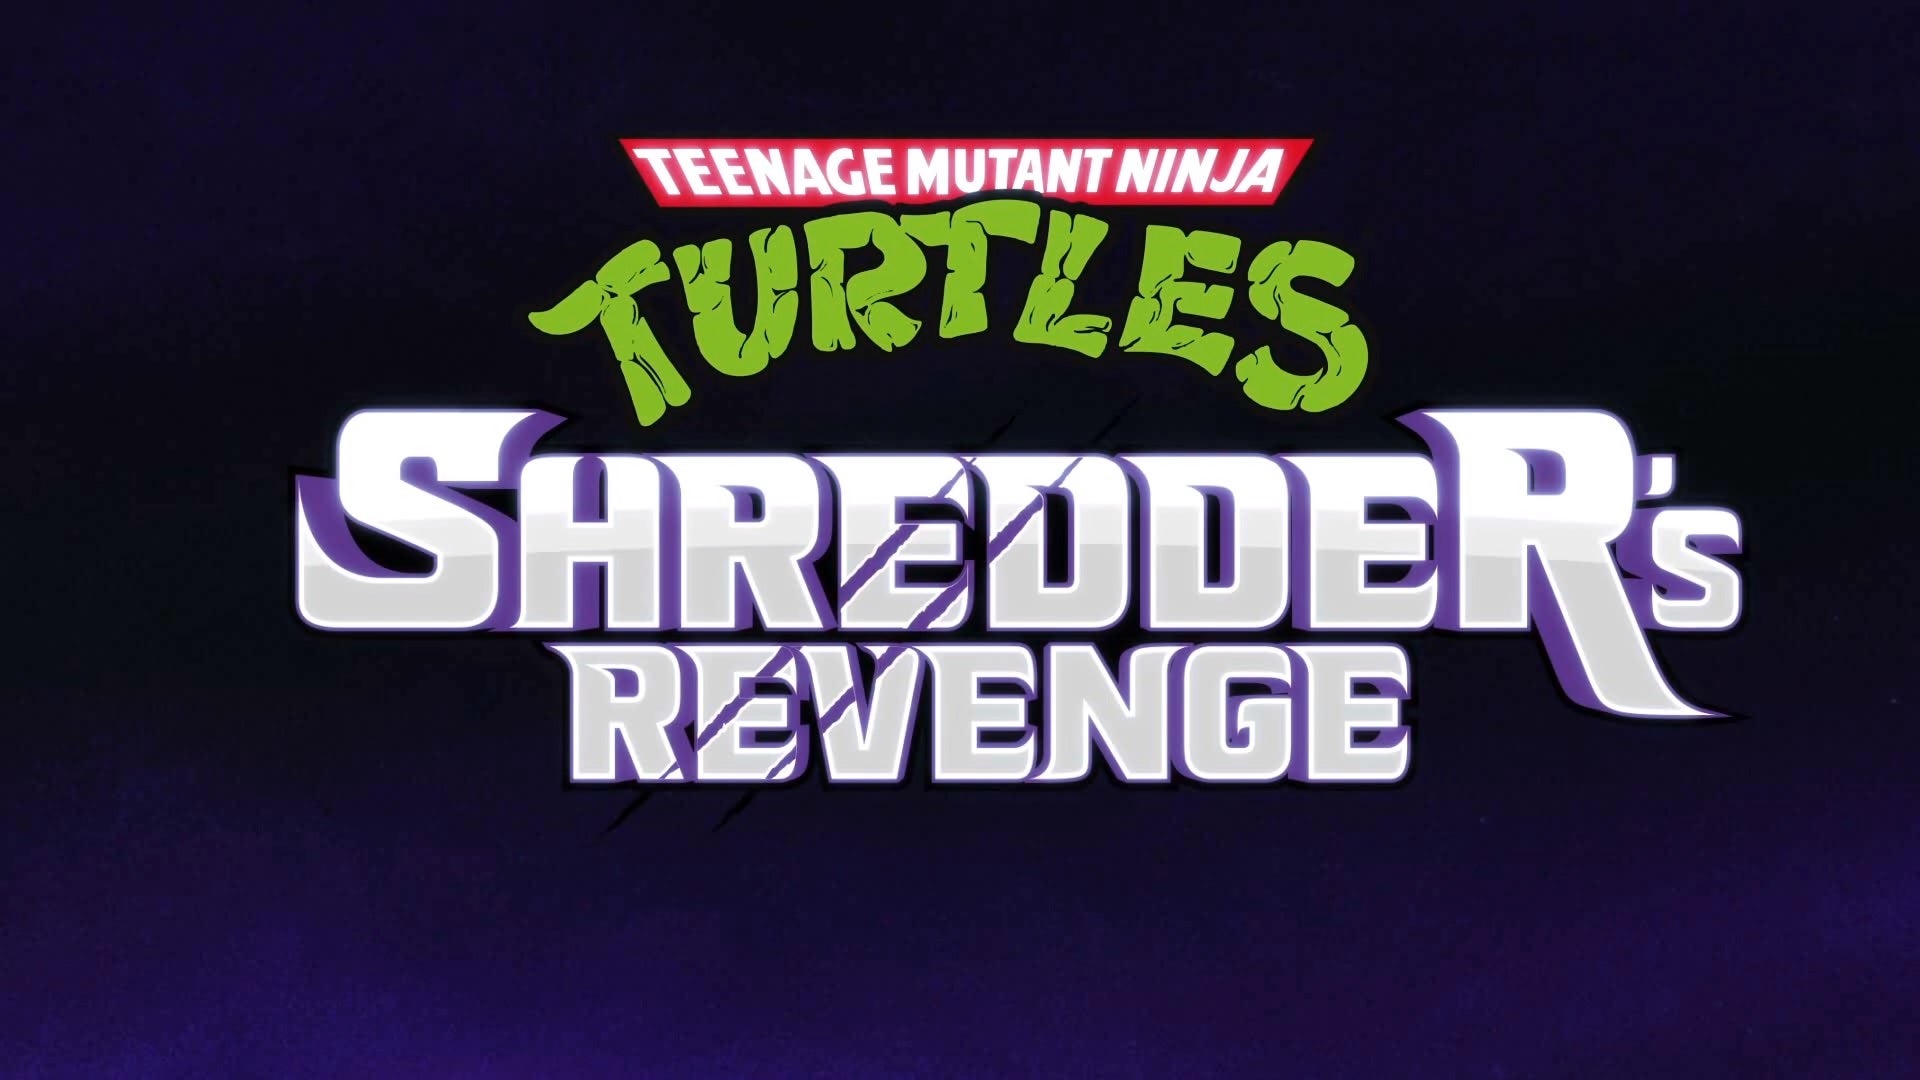 The title of Teenage Mutant Ninja Turtles: Shredder's Revenge